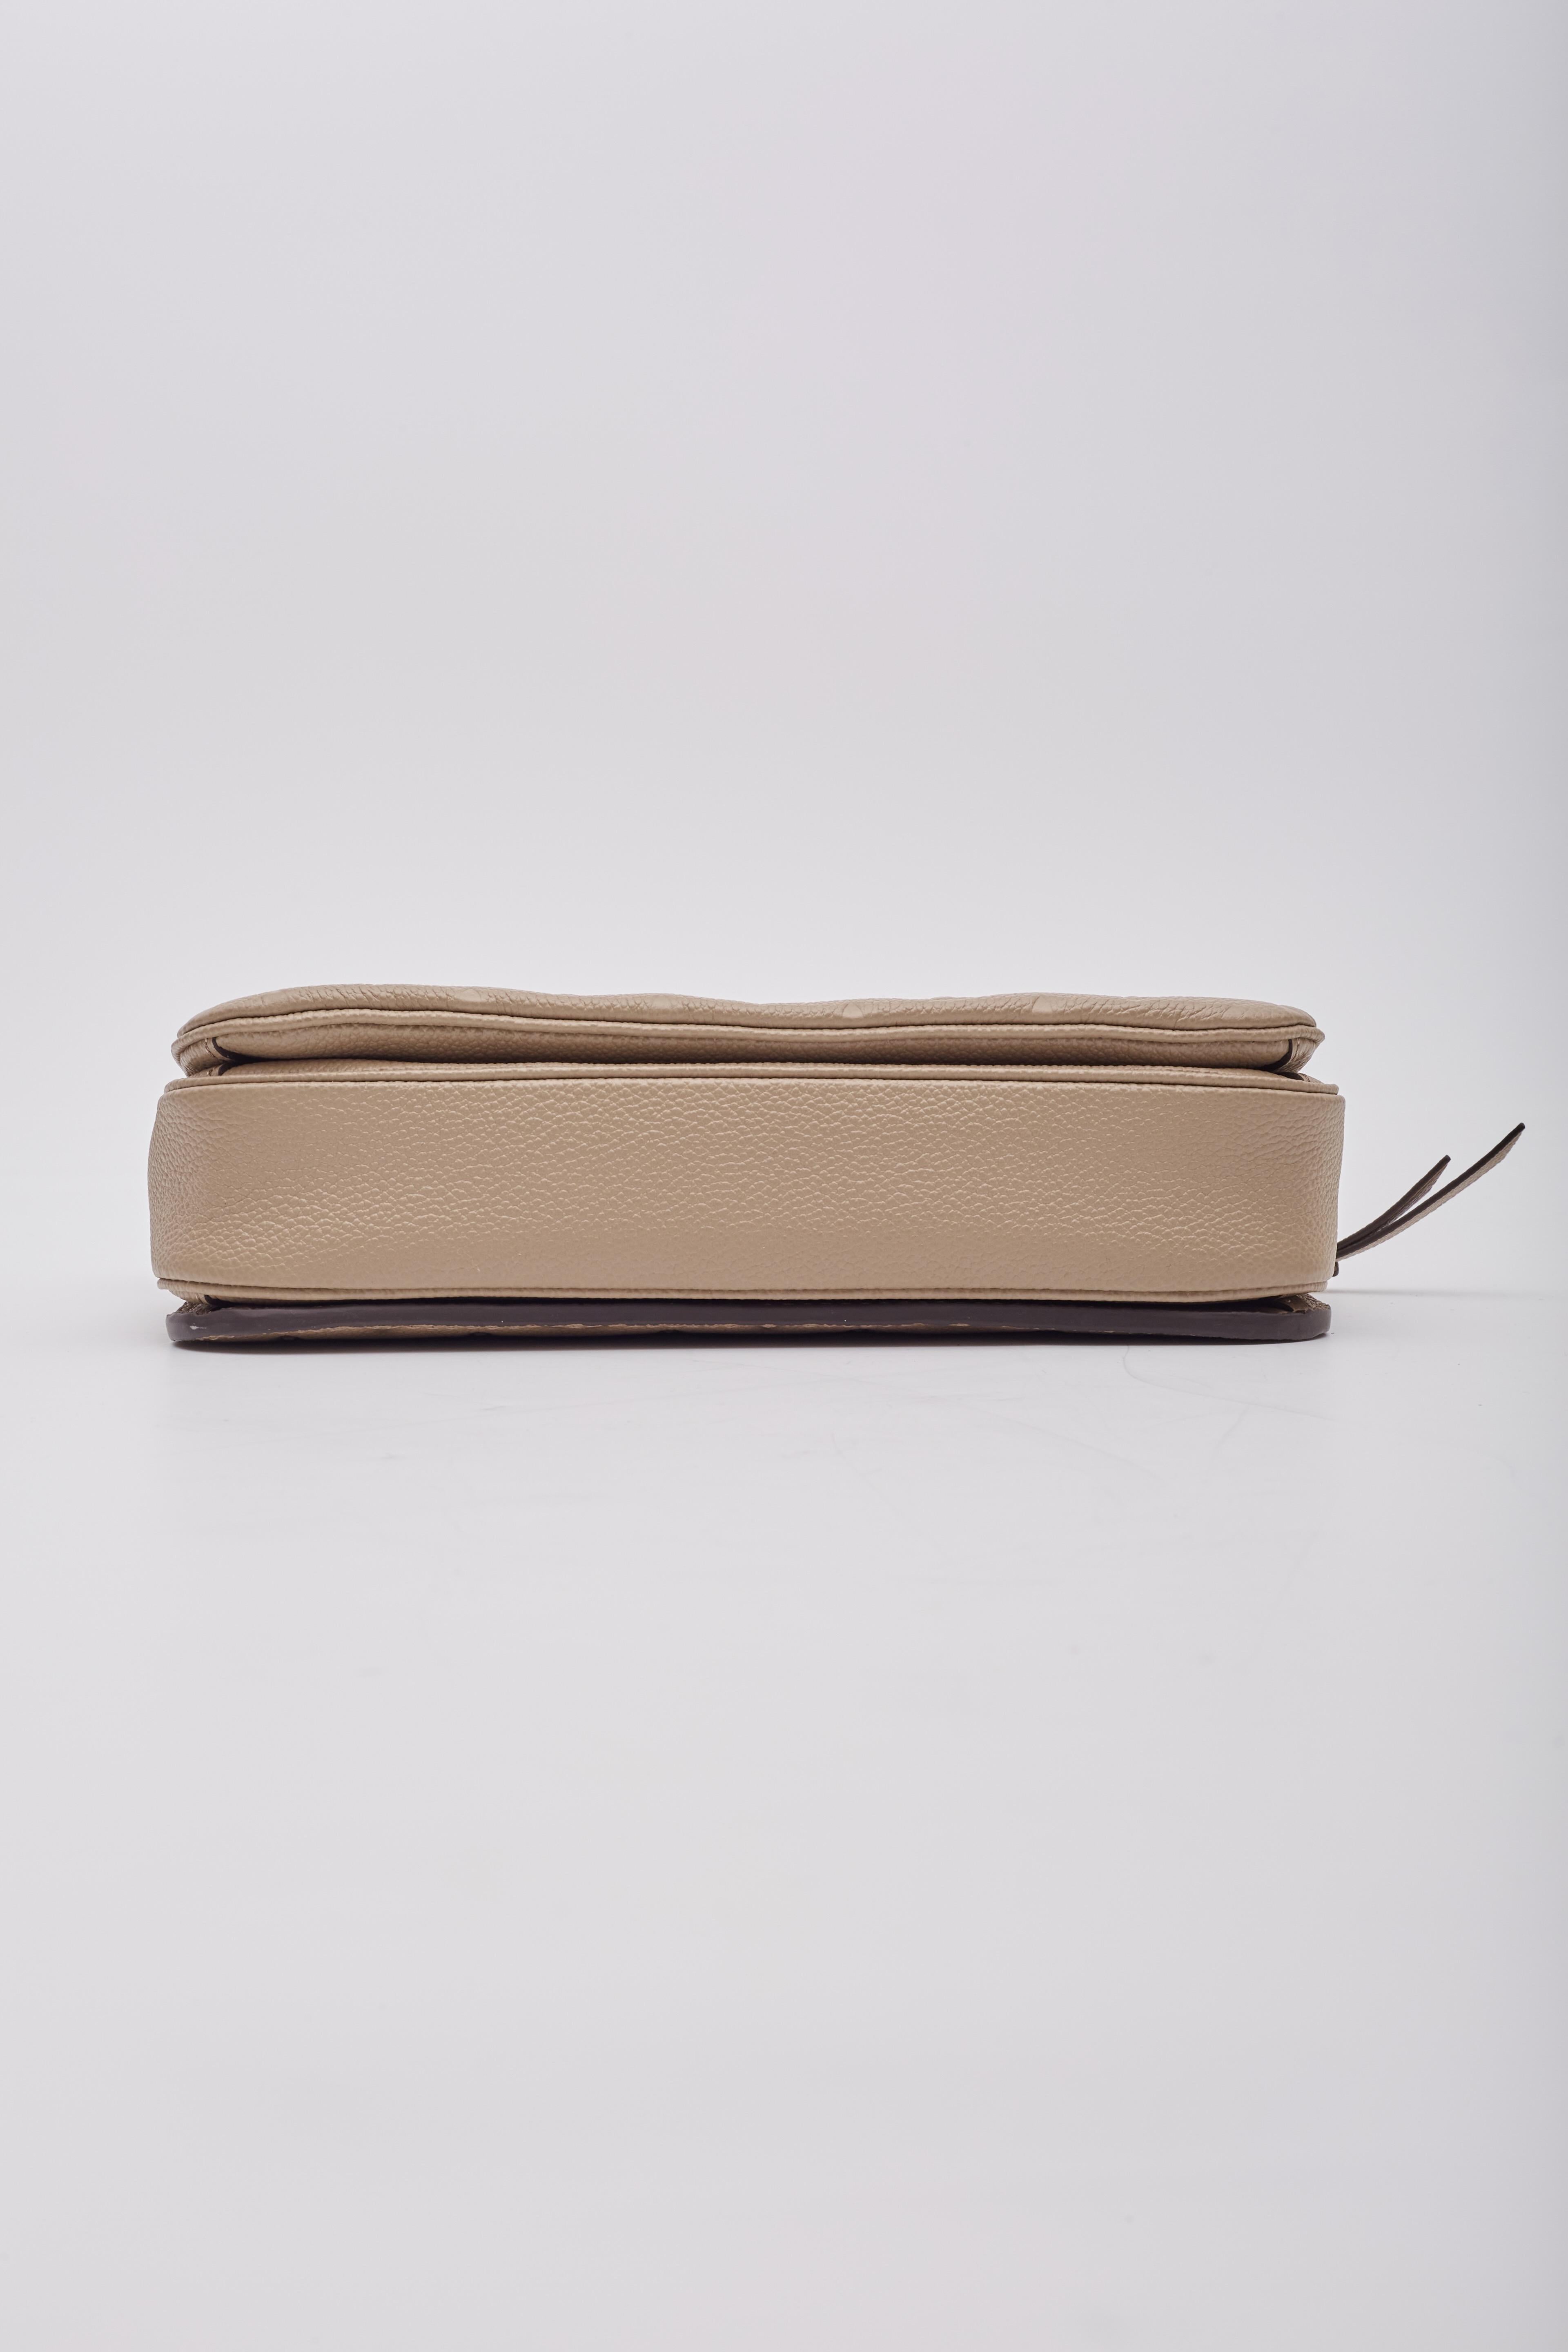 Louis Vuitton Empreinte Tourterelle Pochette Metis Shoulder Bag For Sale 3